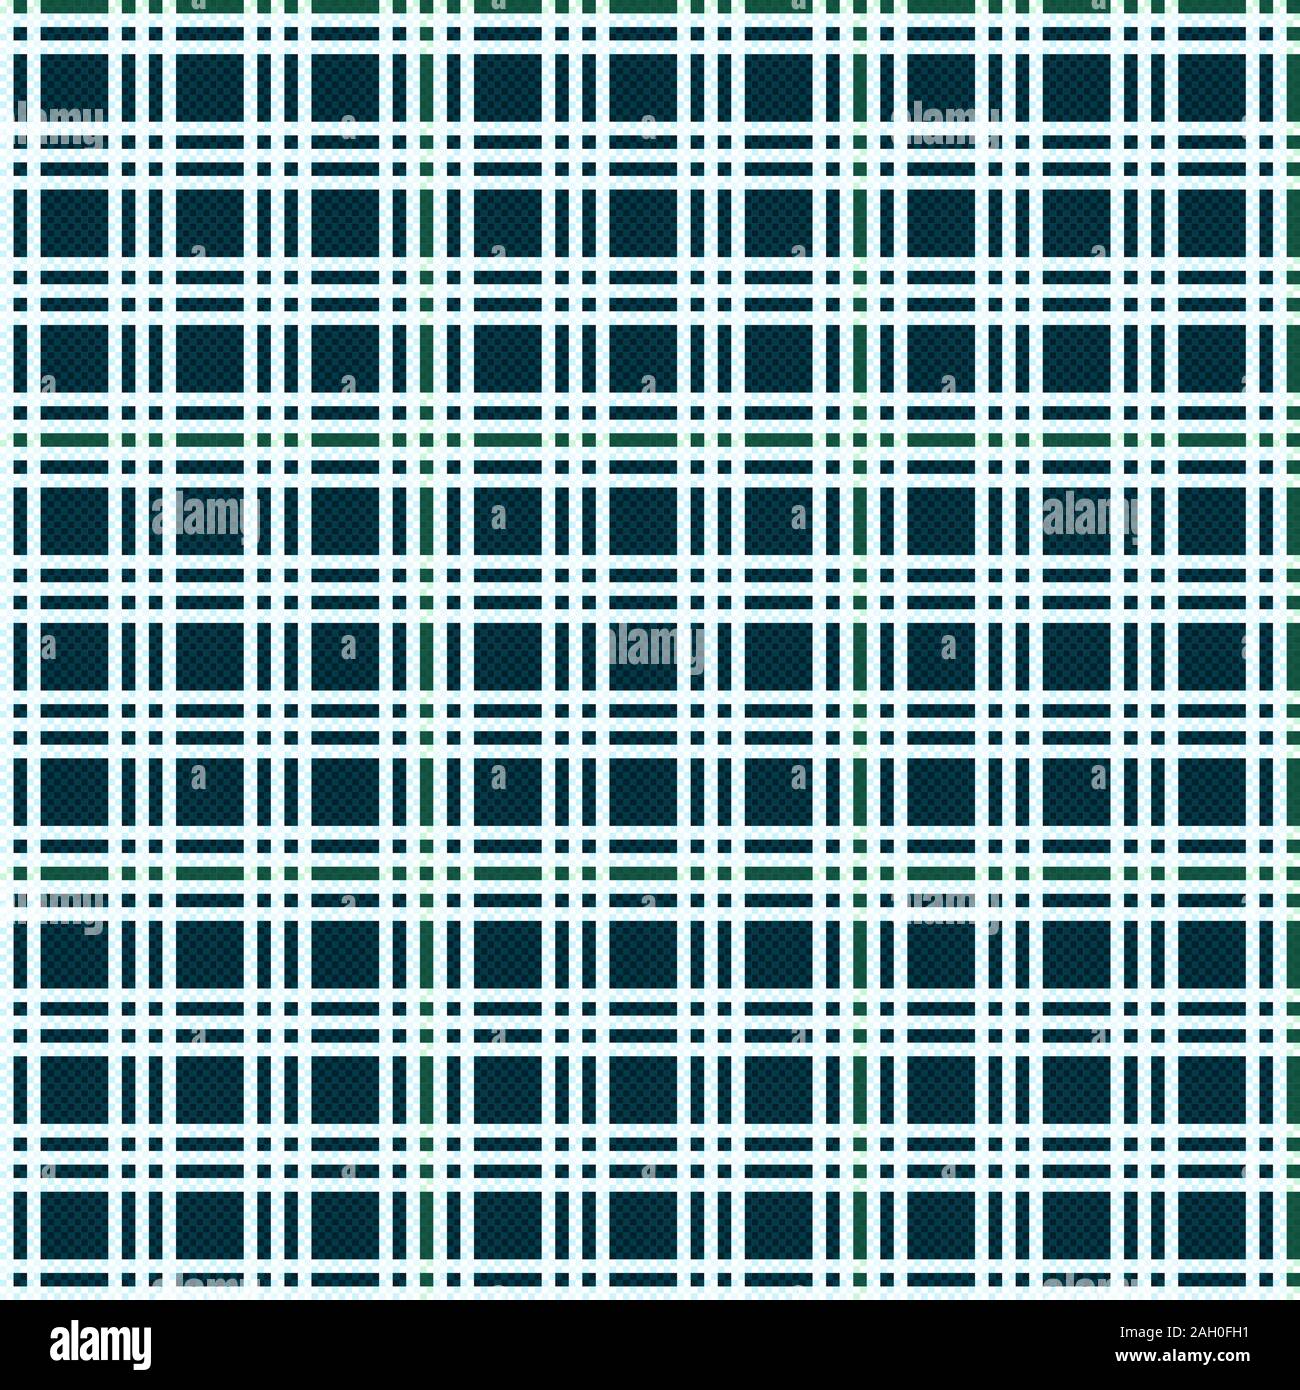 Lumière transparente checkered des tons de bleu et blanc comme un motif à carreaux tartan Illustration de Vecteur